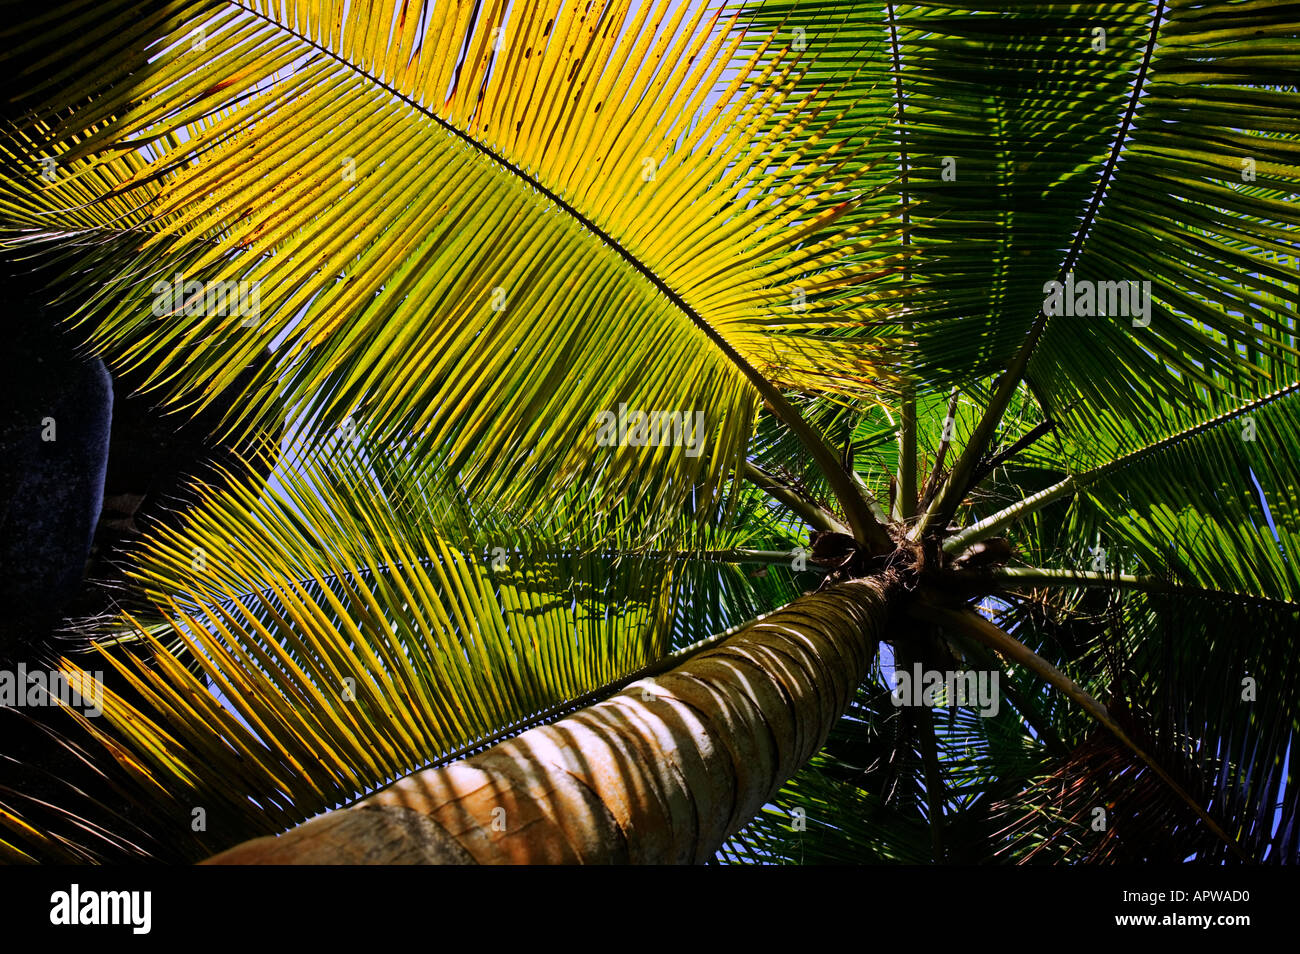 Kokospalme Palme Cocos Nucifera Seychellen Dist tropischen Klimata weltweit Stockfoto